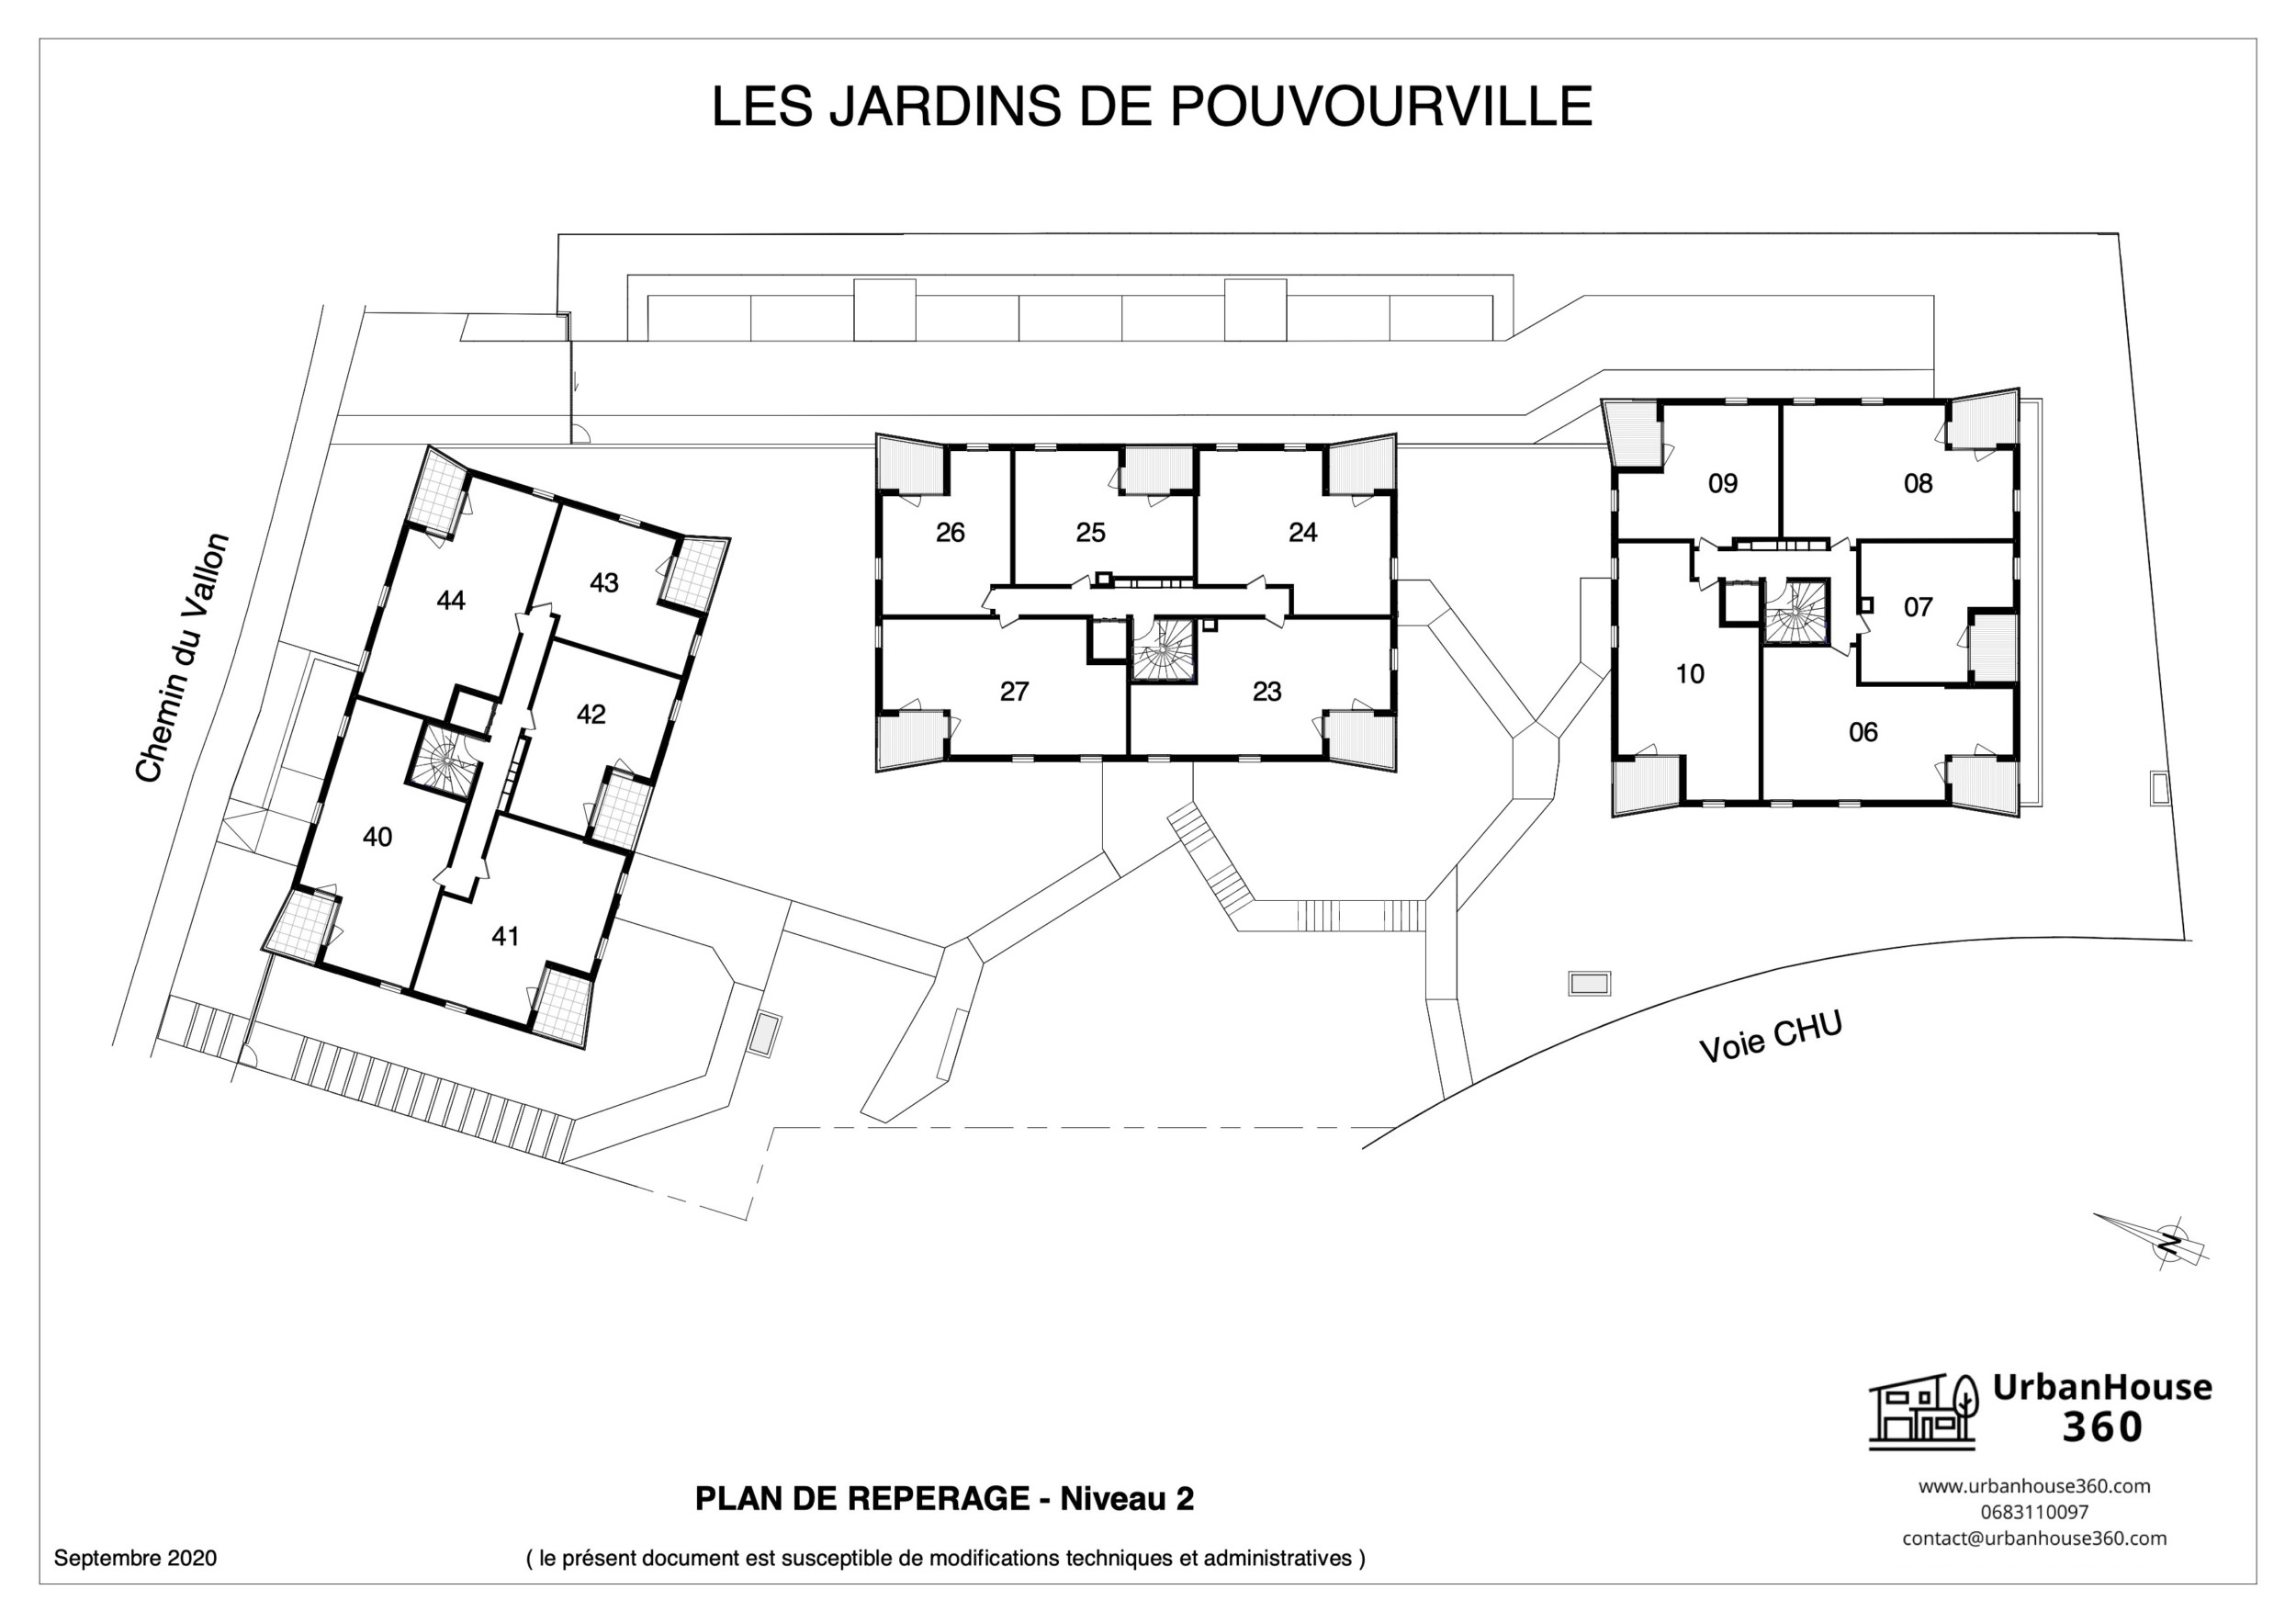 UrbanHouse360-plans_de_reperage-les_jardins_de_pouvourville 3